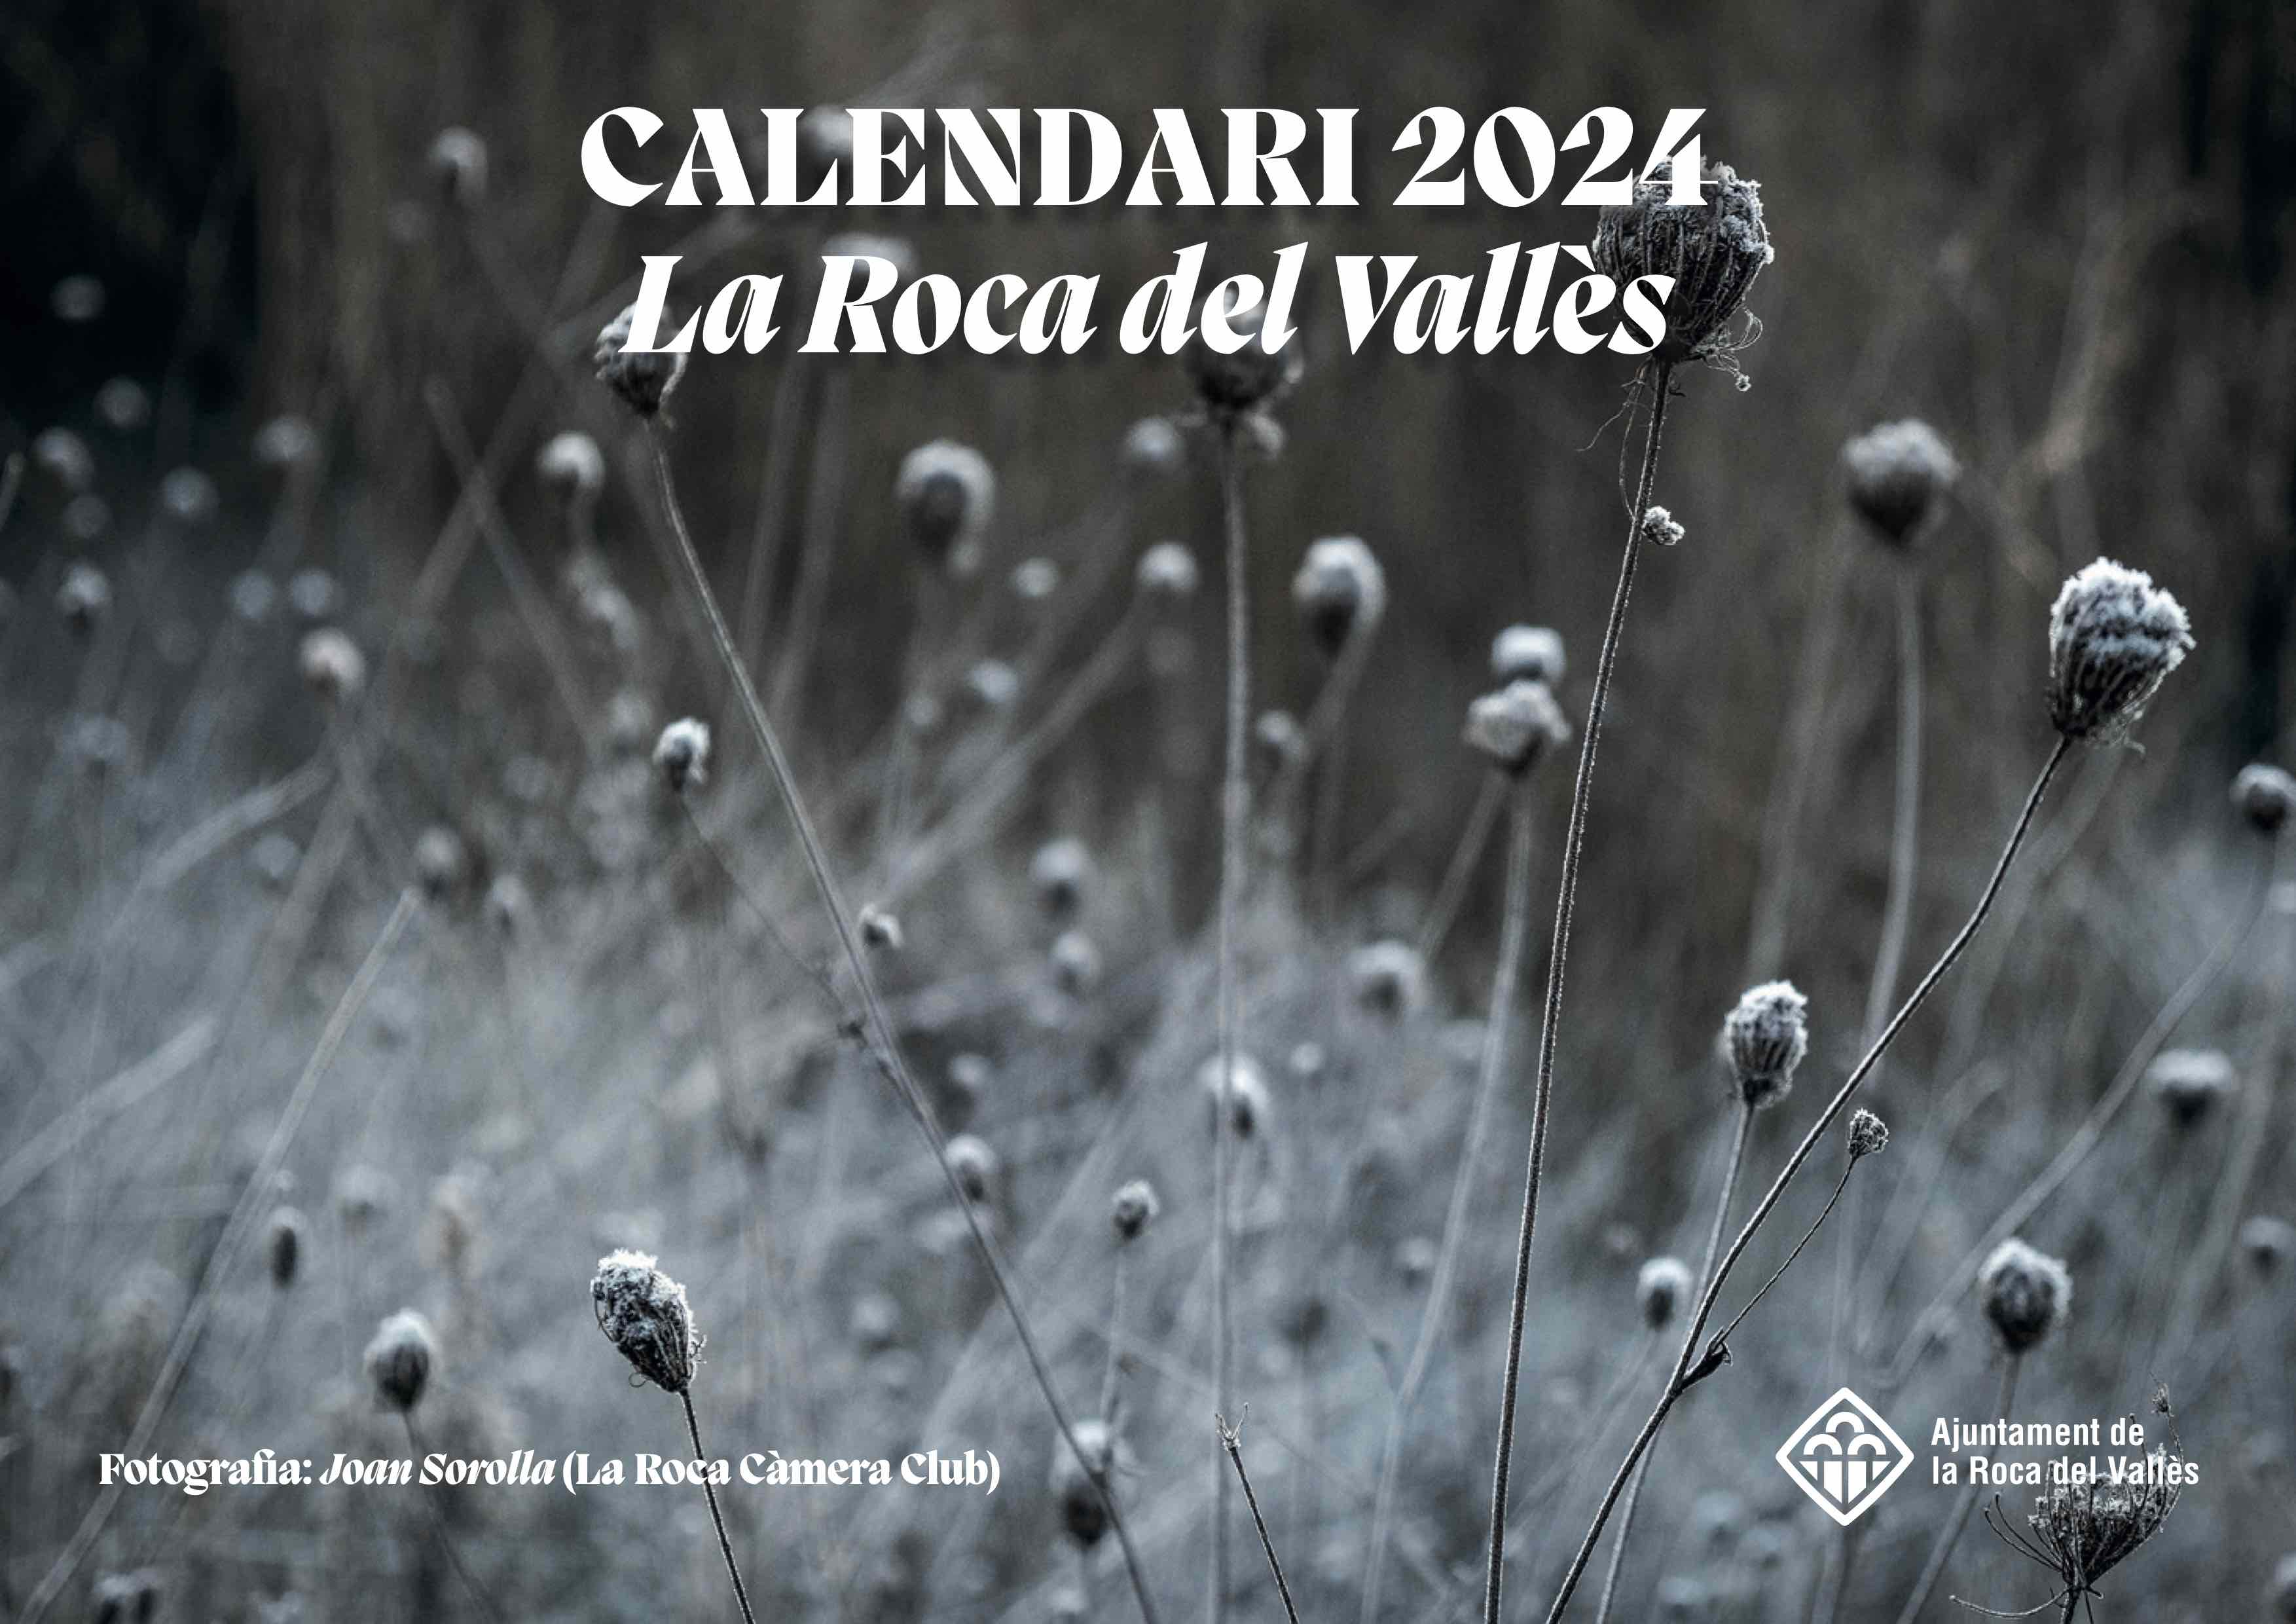 El calendari de paret 2024 mostra la natura de la Roca del Vallès al llarg de l'any